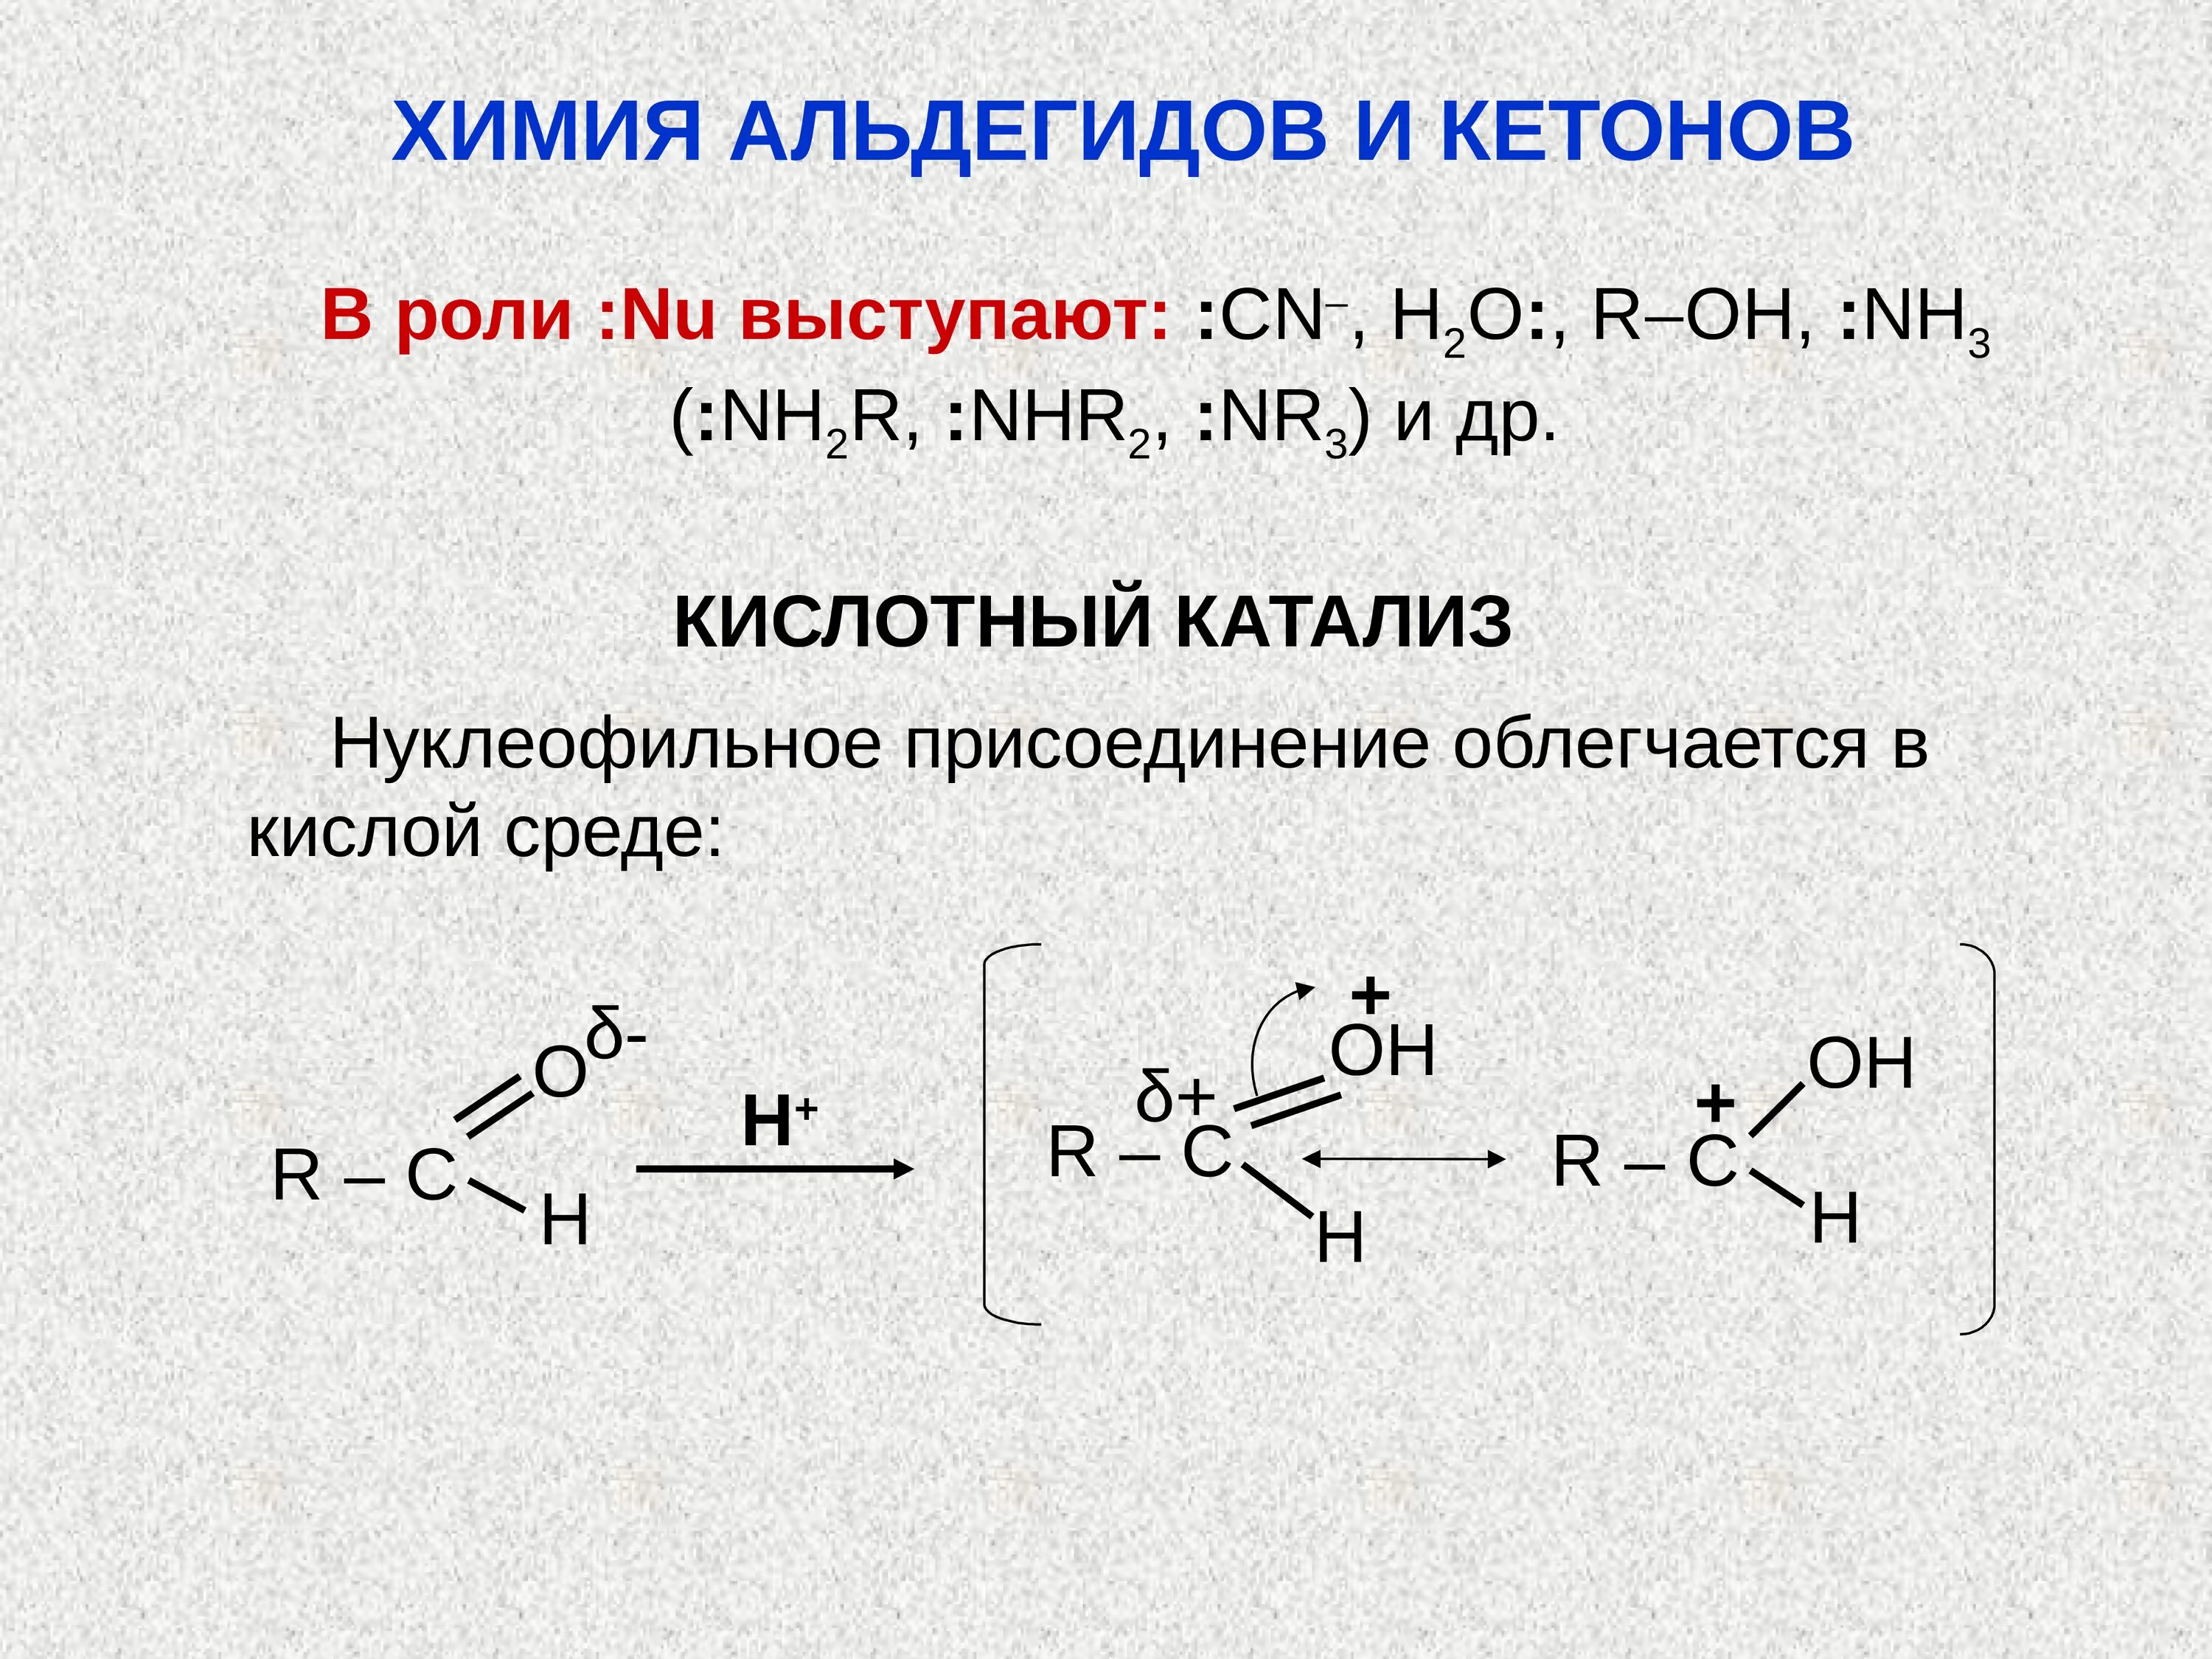 Реакция с водой в кислой среде. Щелочной катализ альдегида. Кислотный катализ альдегидов. Основный катализ альдегидов и кетонов. Роль кислотного катализа альдегидов и кетонов.